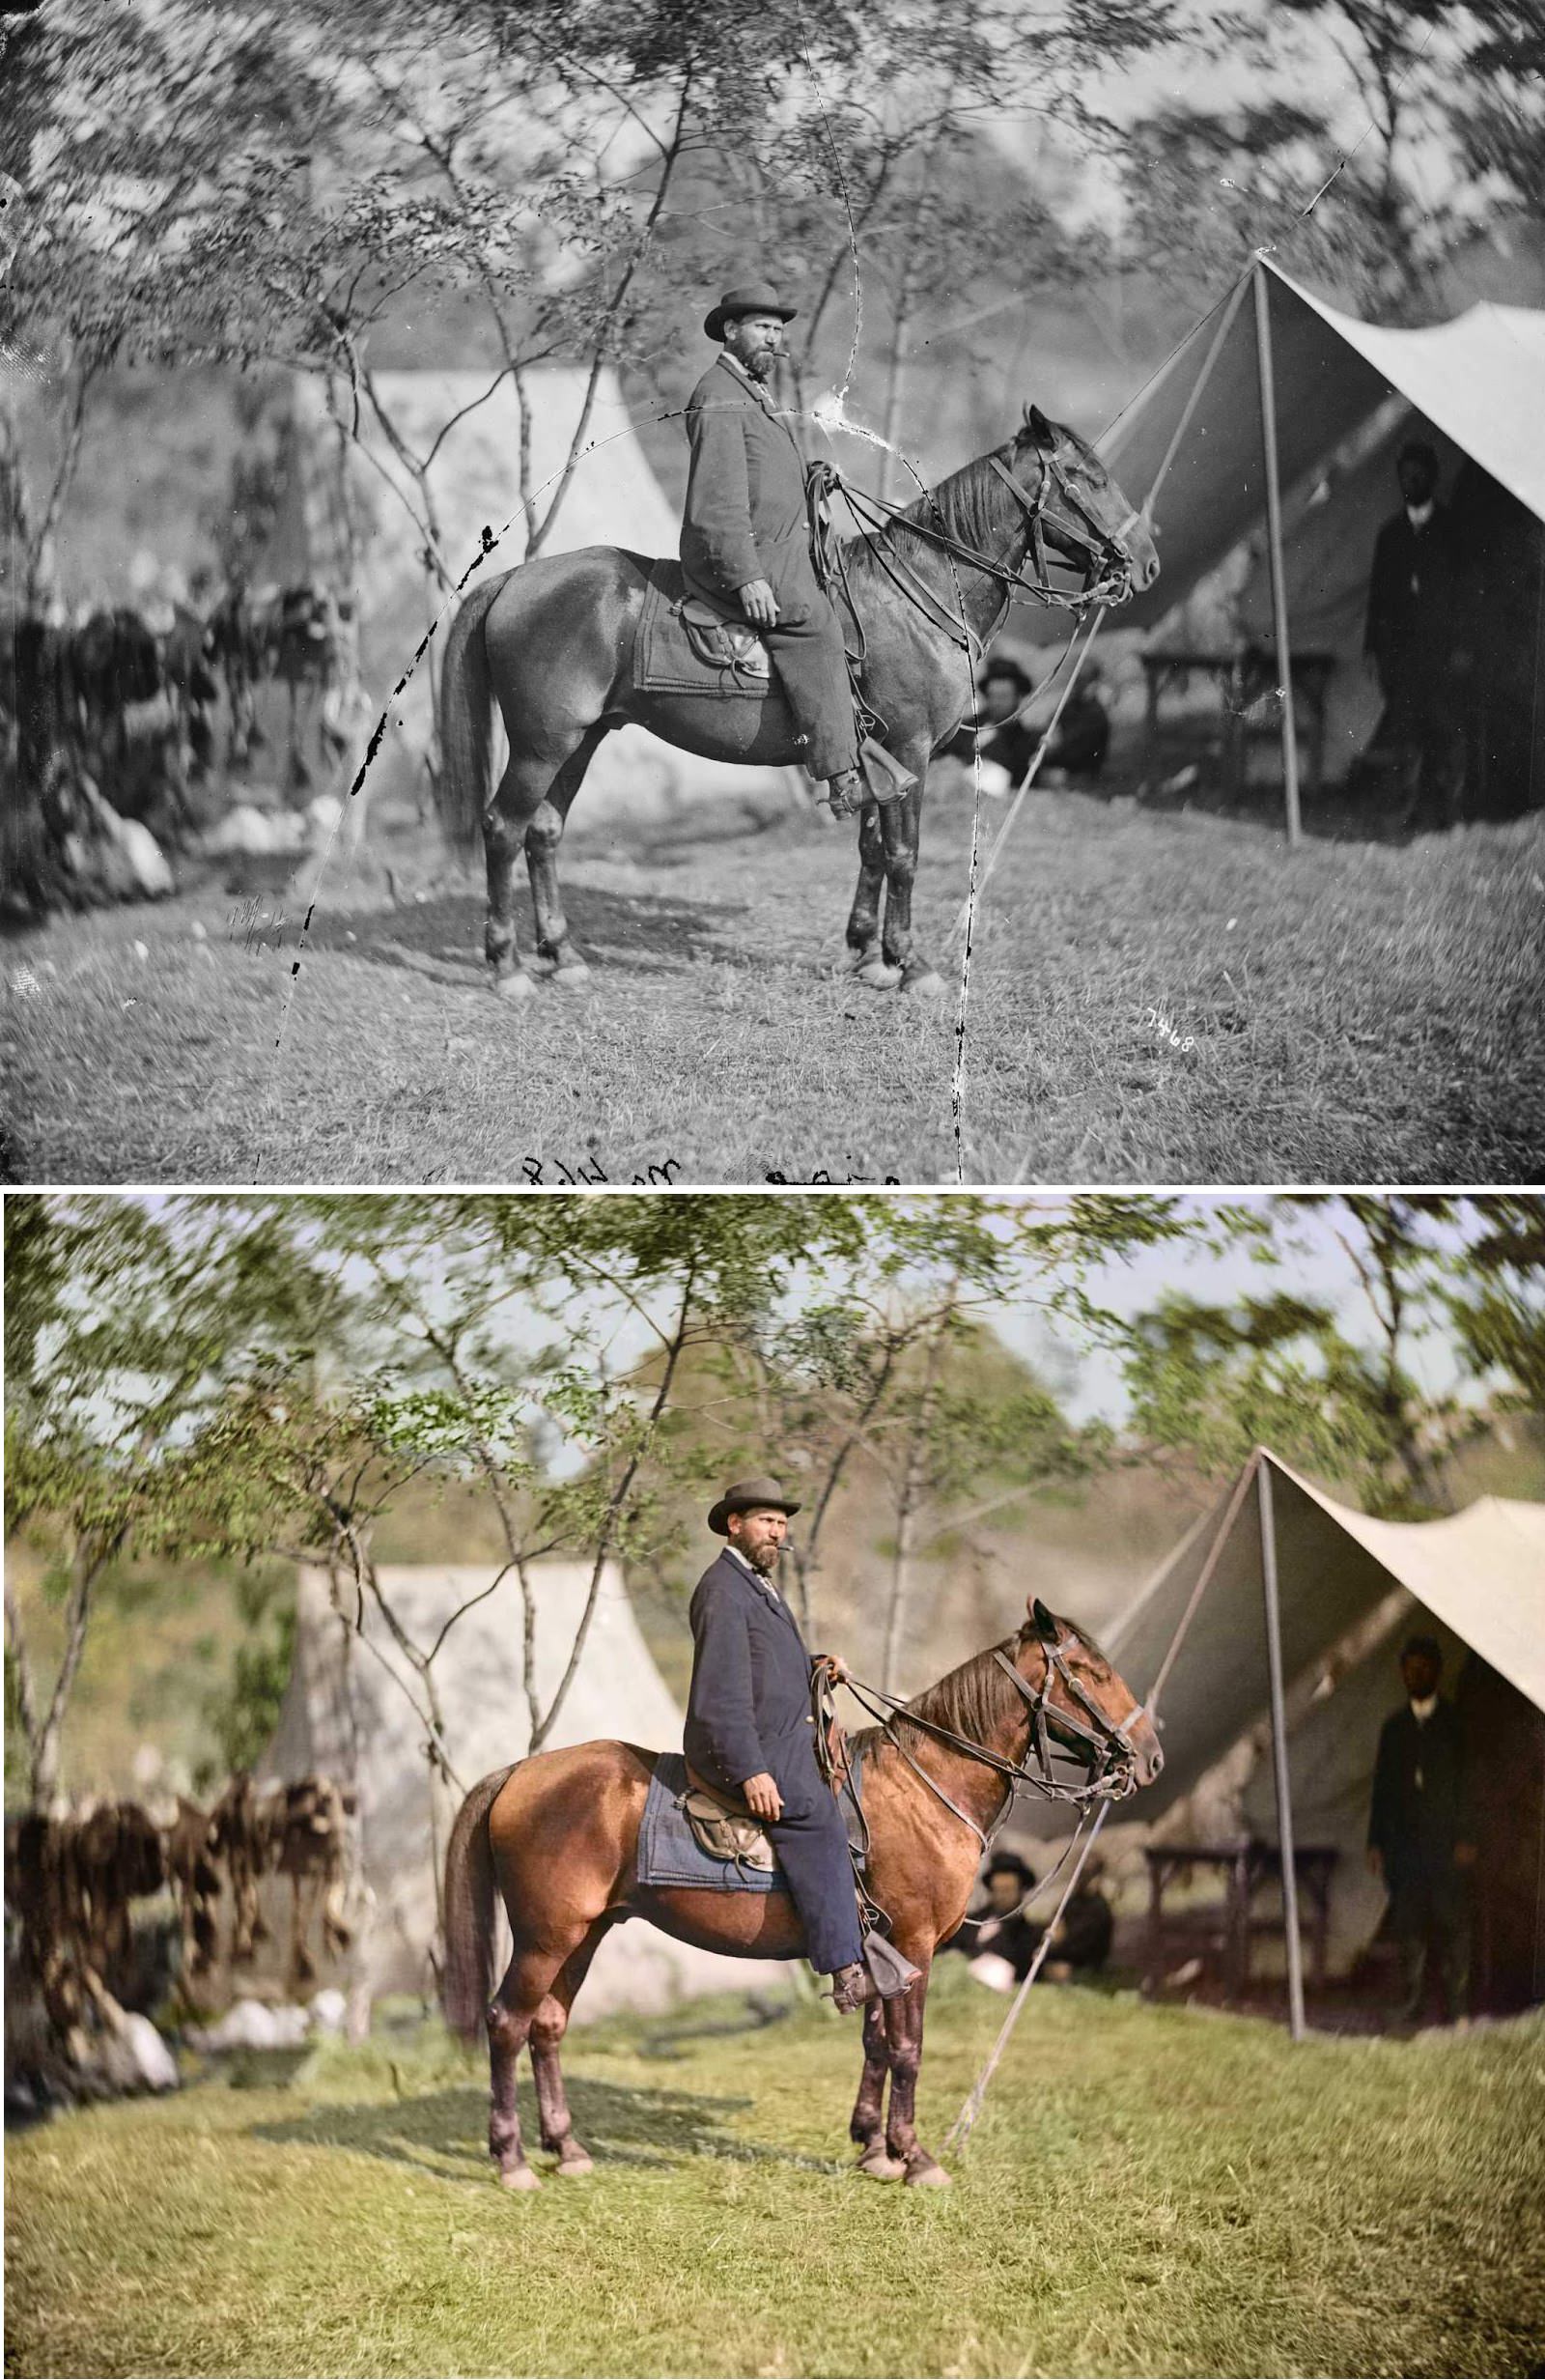 Allan Pinkerton (“E. J. Allen”) of the Secret Service on horseback in Antietam, Md., Oct. 1862.